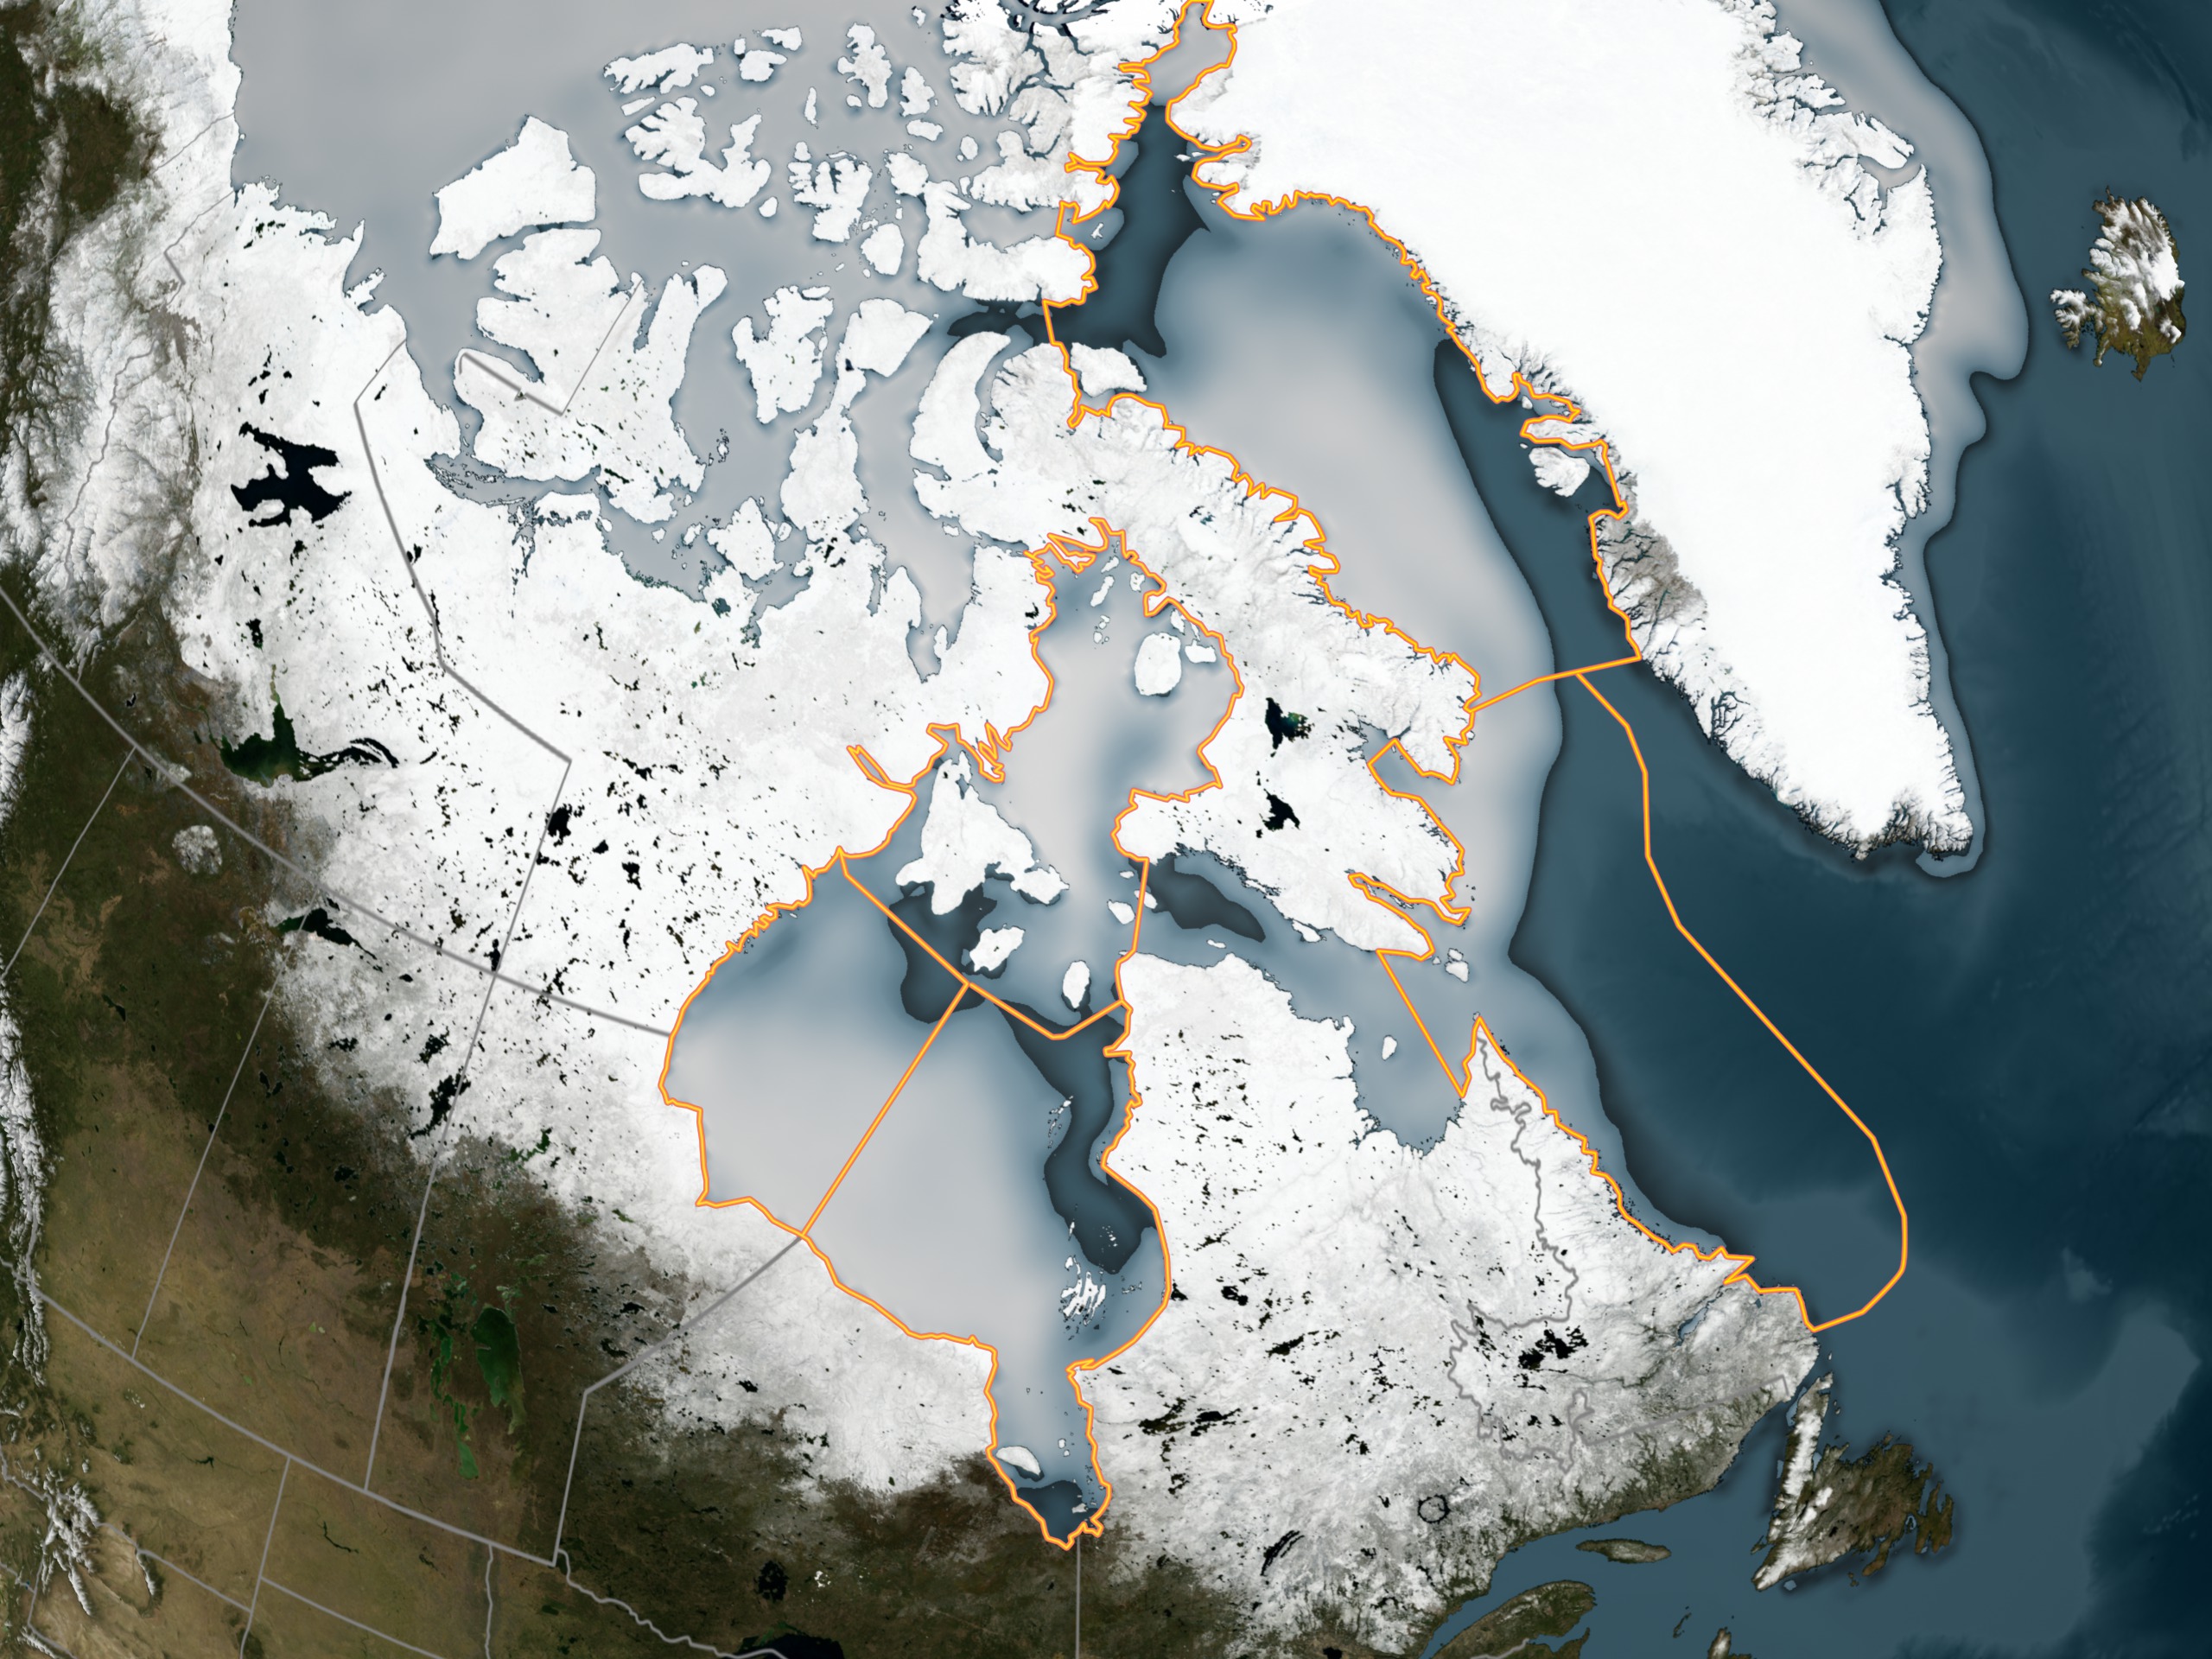 Архипелаг канадский арктический на карте северной америки